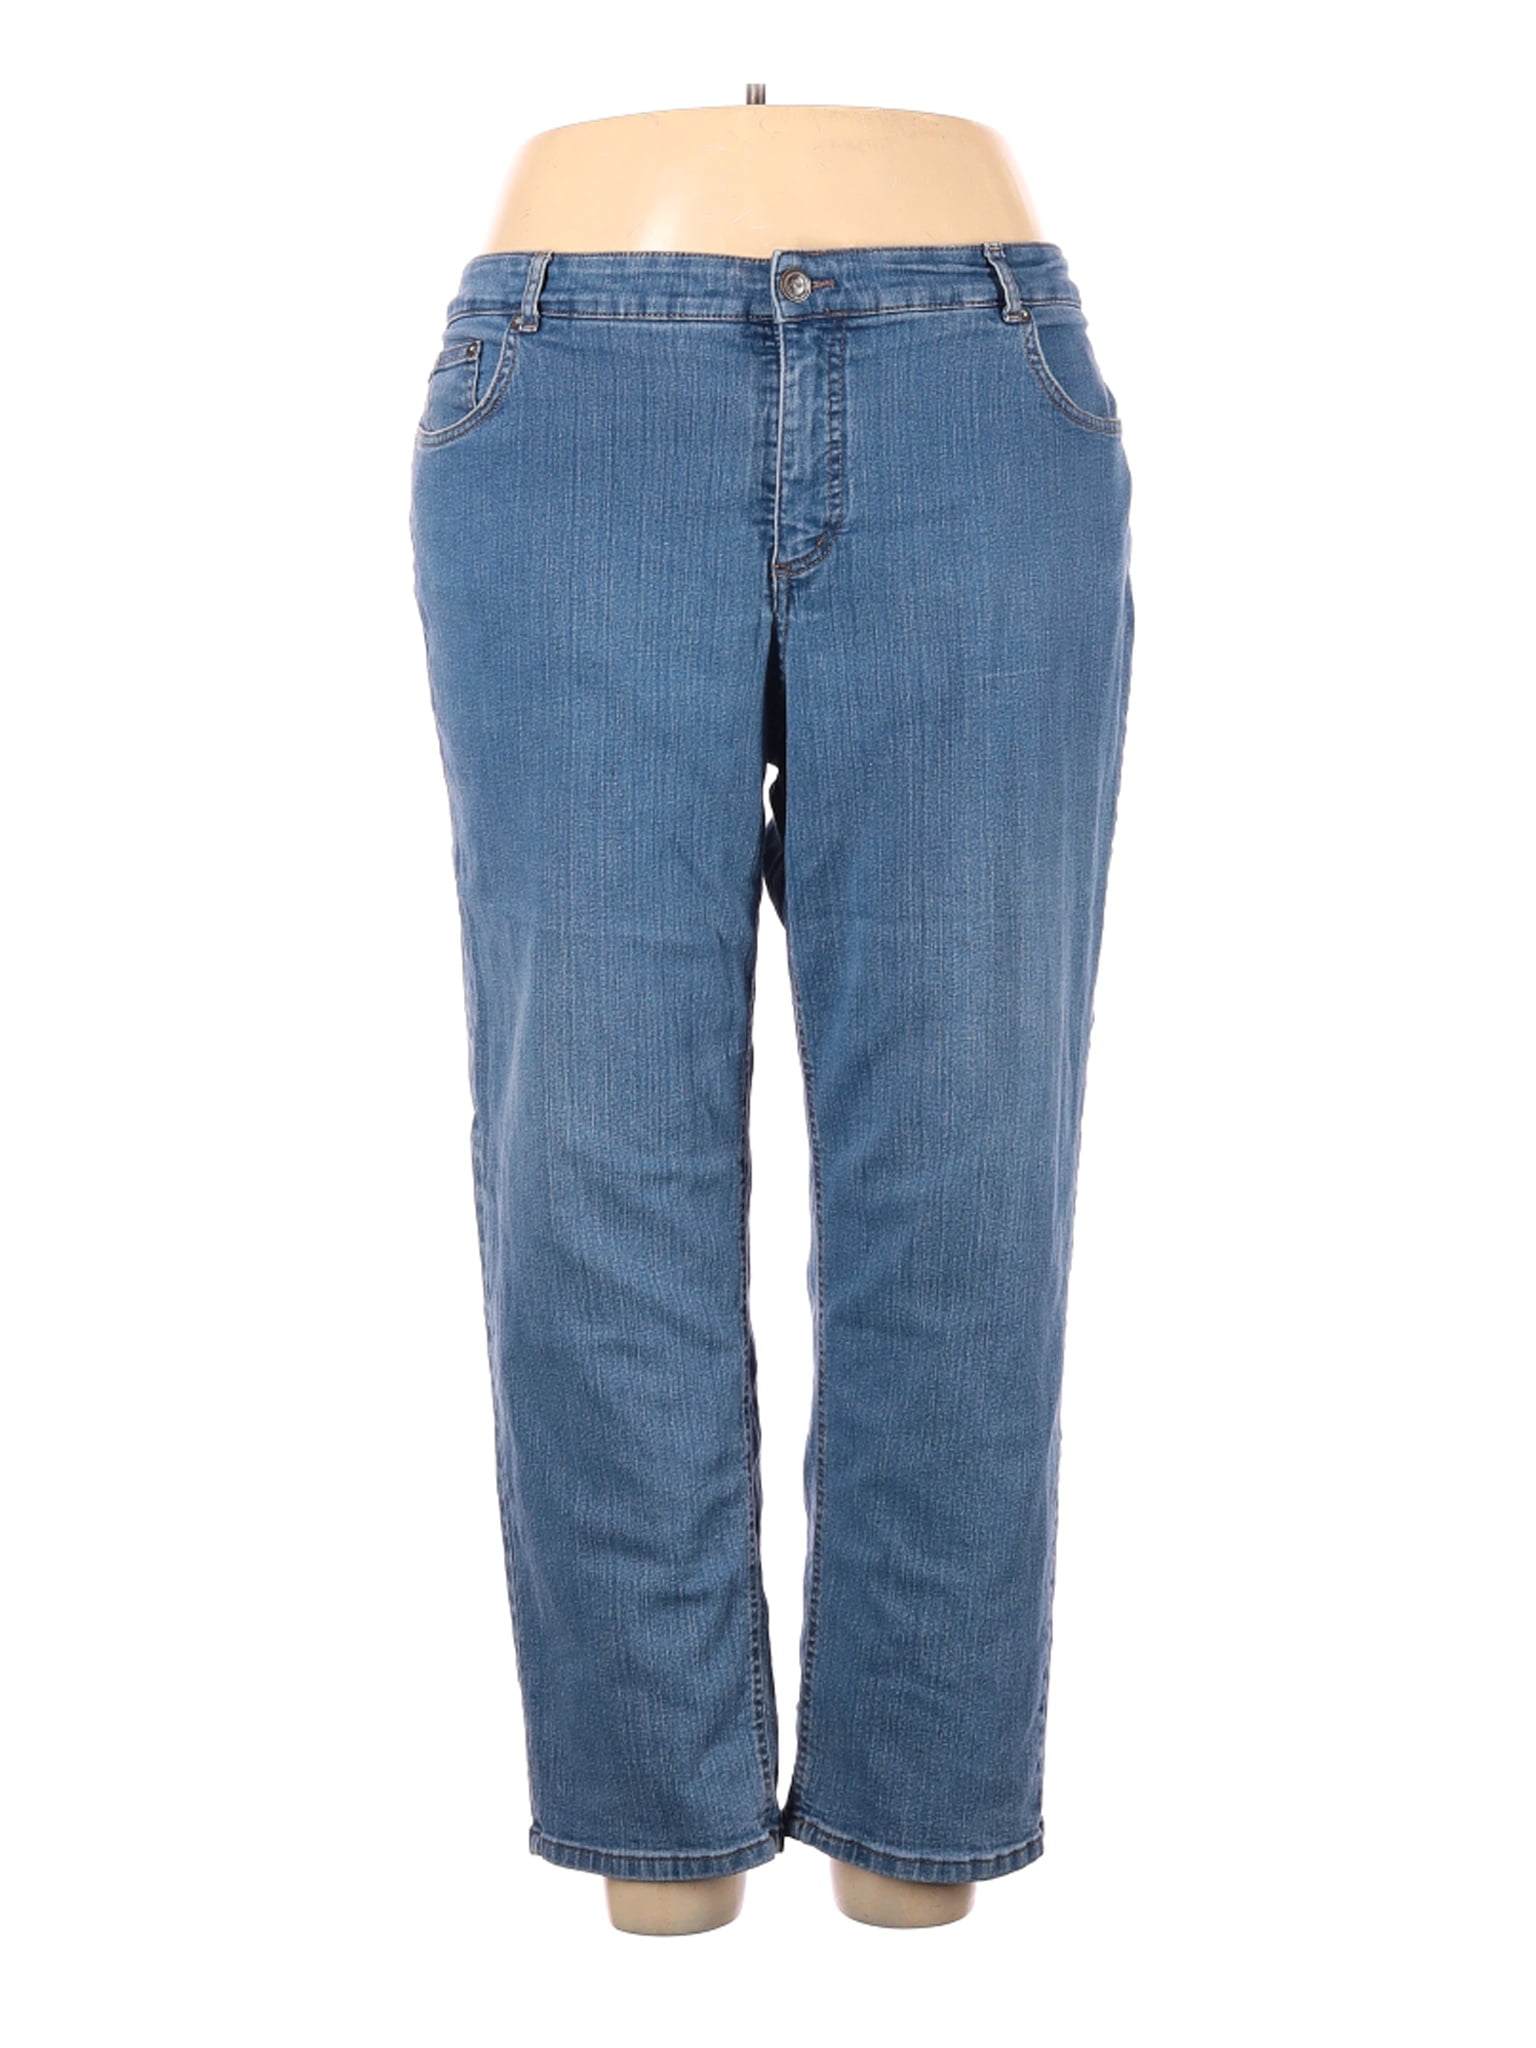 walmart jms women's jeans